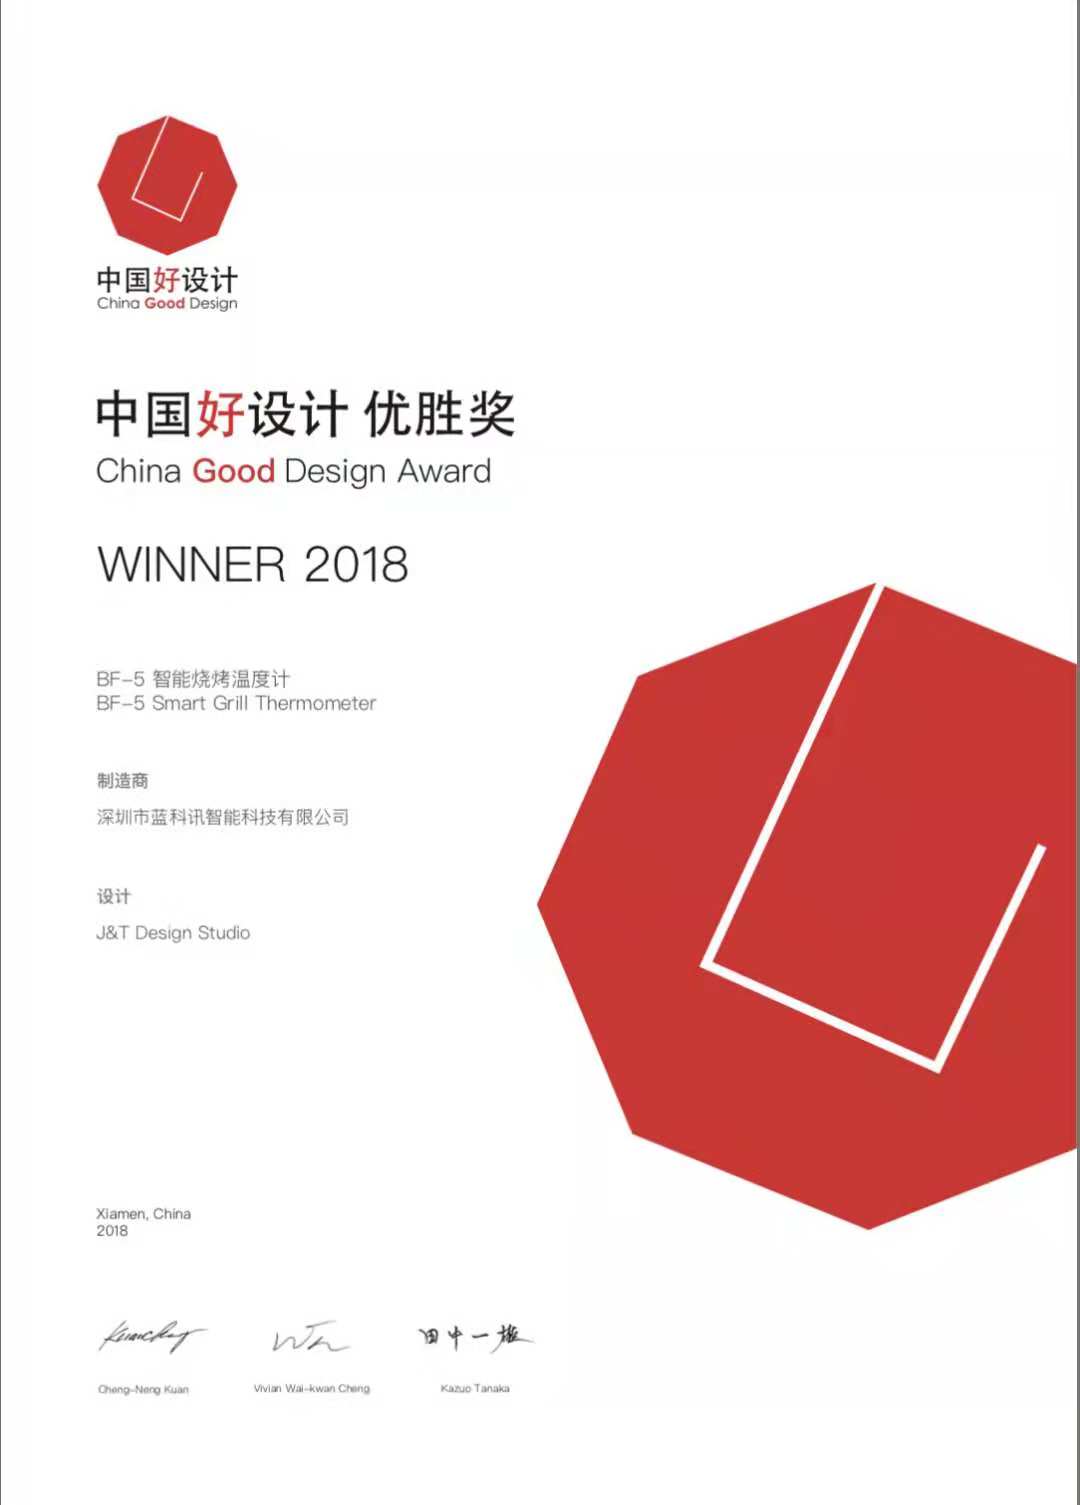 China Good Design Award